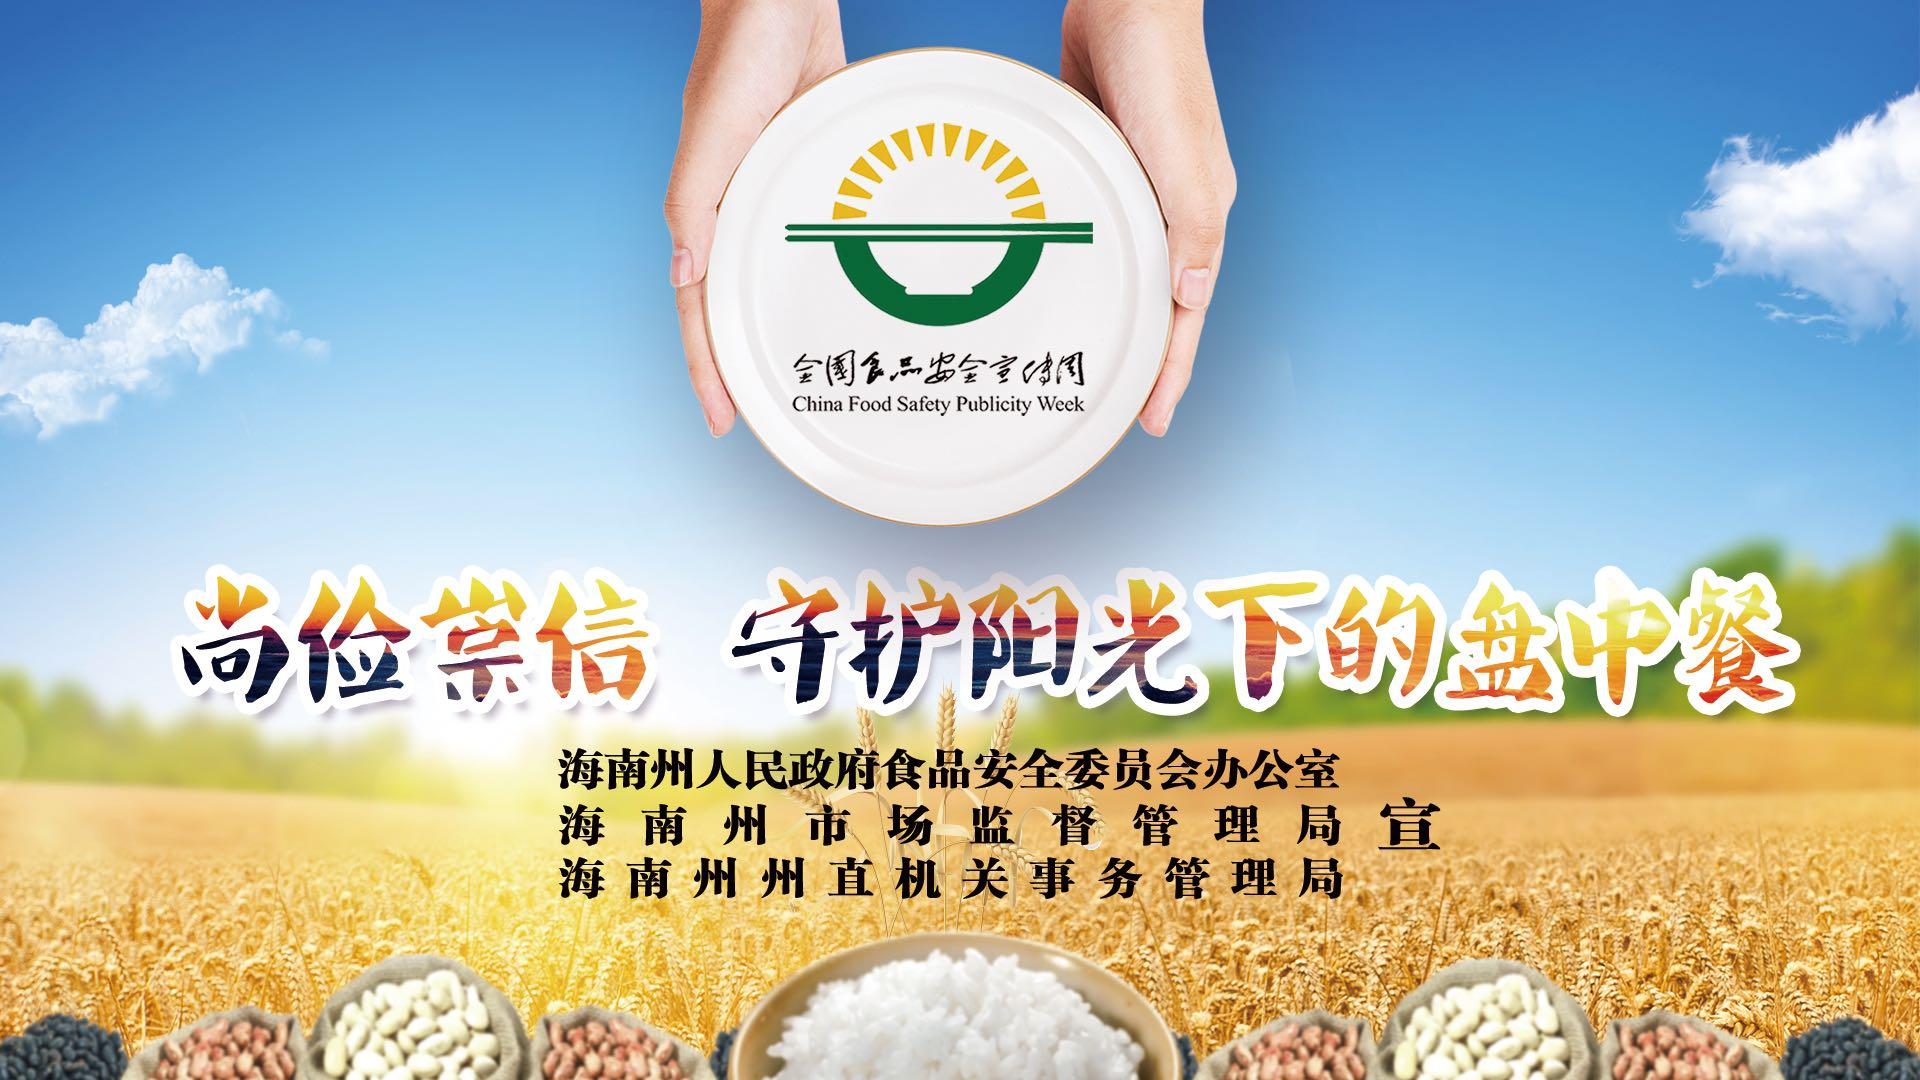 海南州食品安全宣传周活动启动宣传片